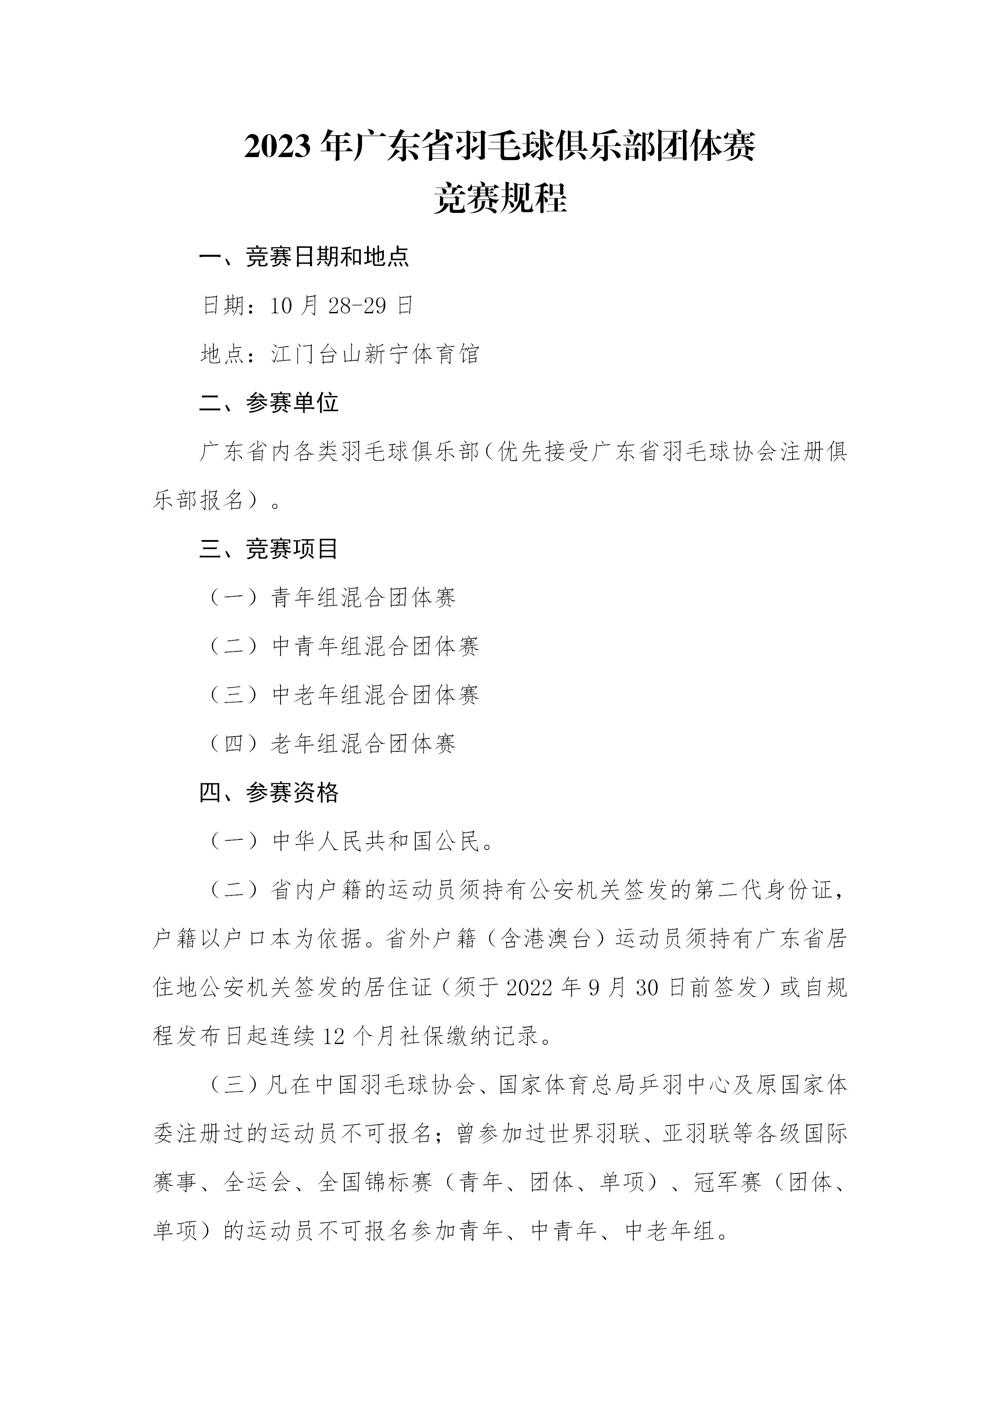 2023年广东省羽毛球俱乐部团体赛竞赛规程V2.0-20230921_01